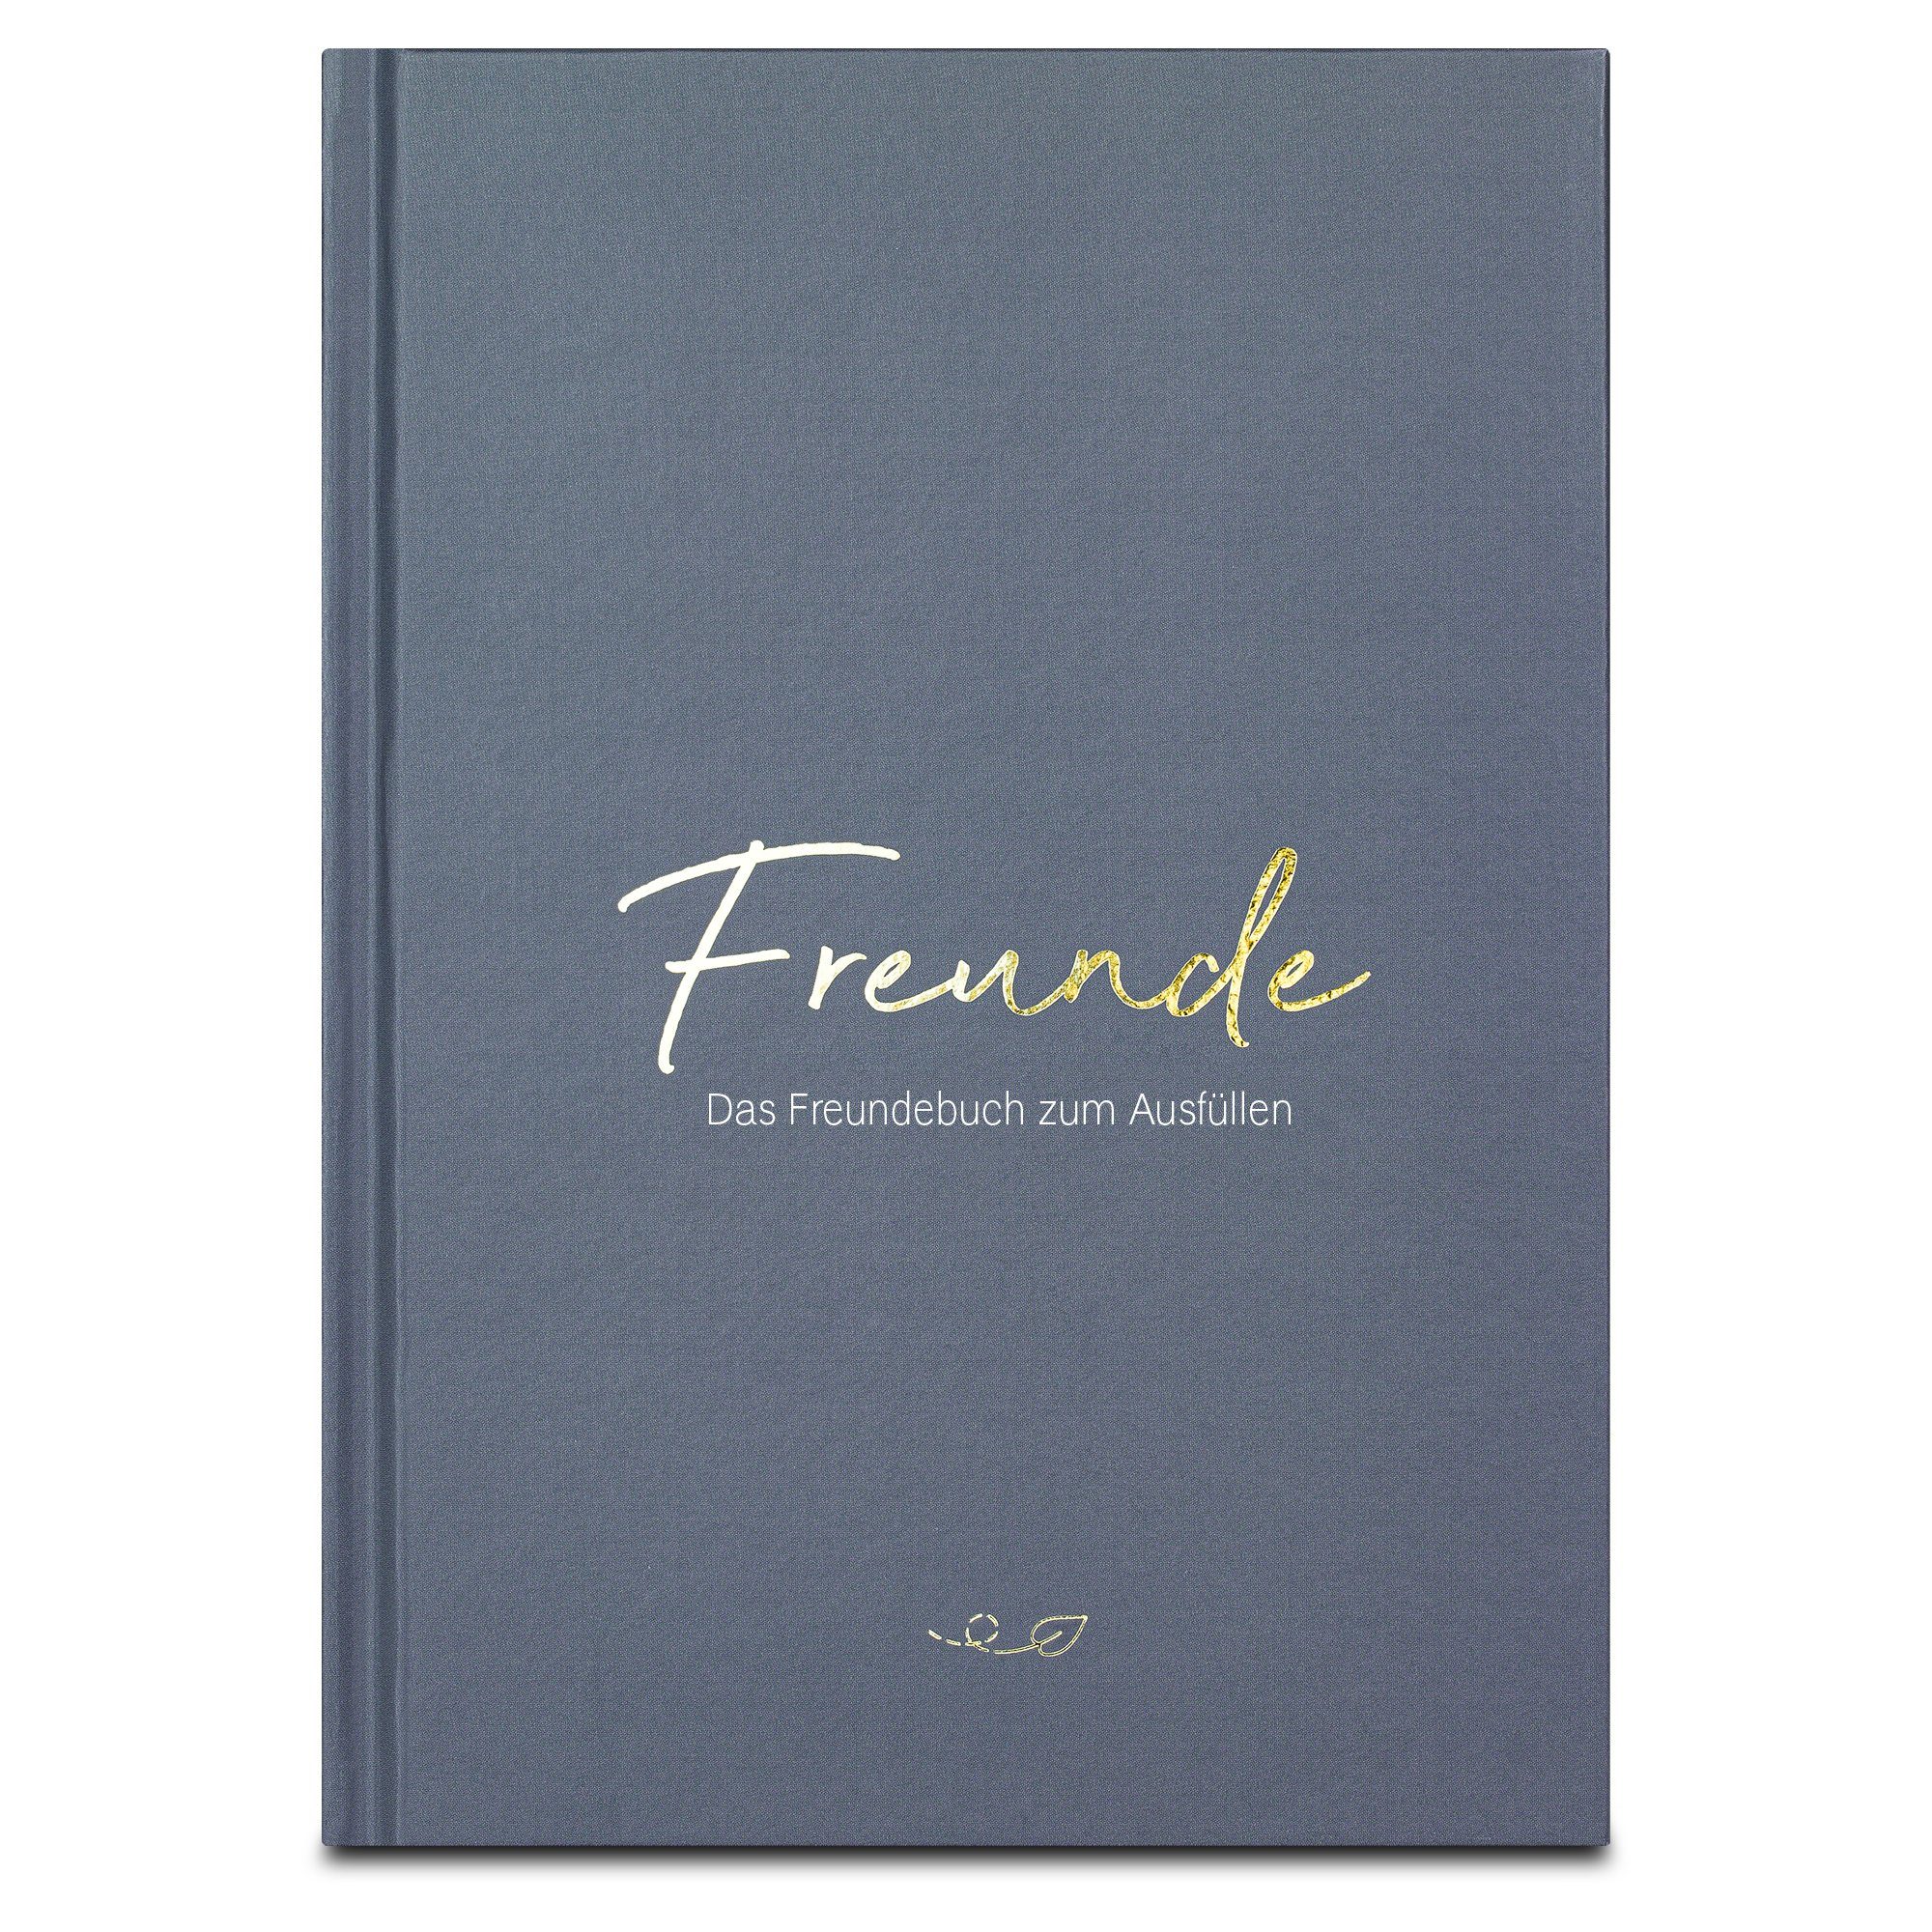 LEAF & GOLD für Freundschaftsbuch zum mit Freundebuch Ausfüllen, Erwachsene mit Freundebuch Gold-Cover, Poesiealbum edlem